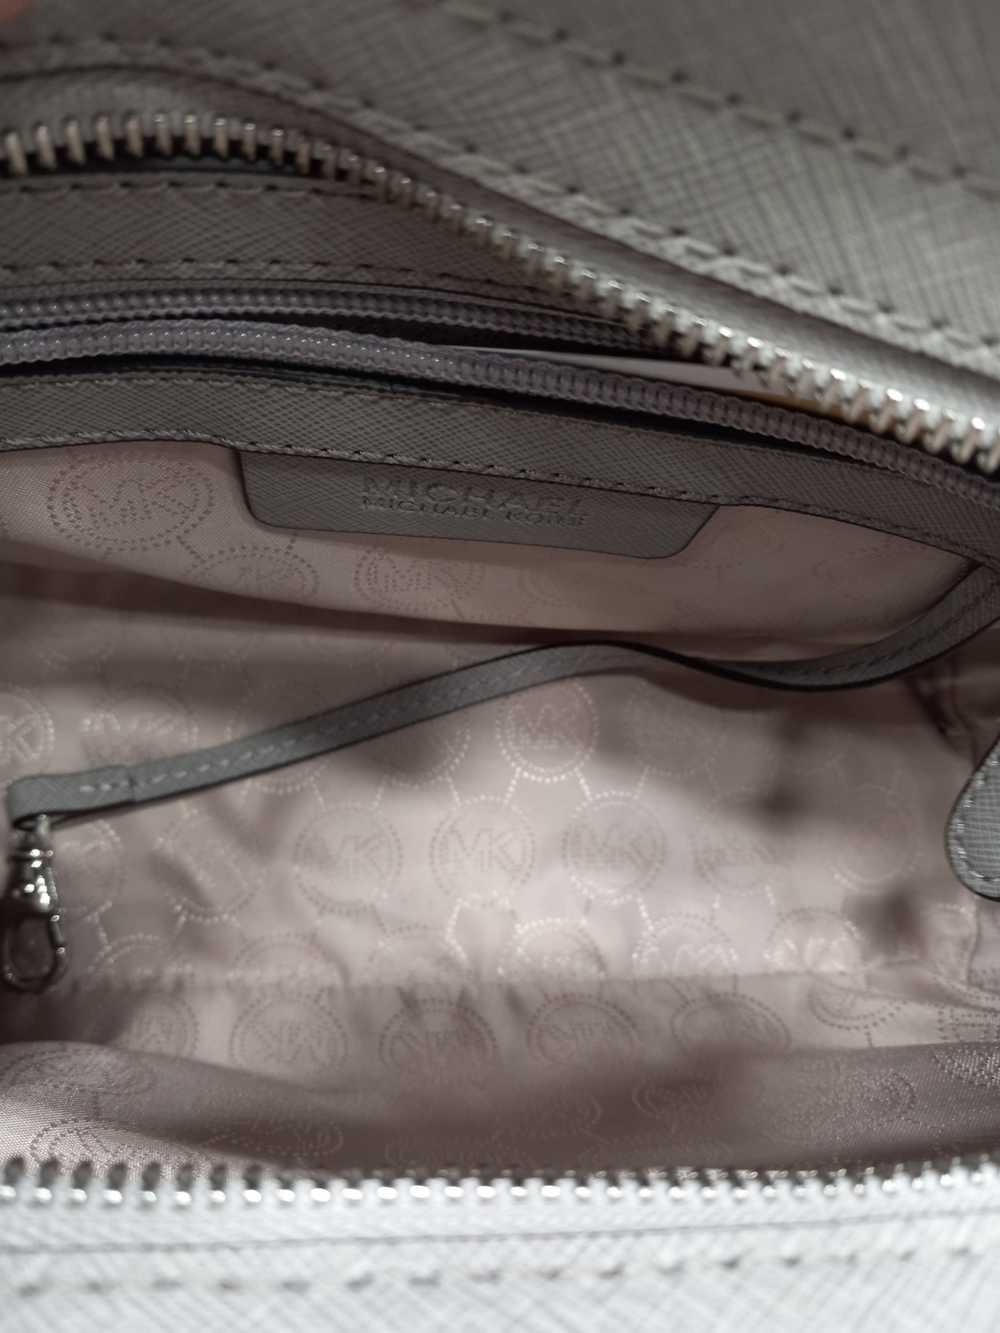 Michael Kors Selma Grey Leather Handbag - image 6